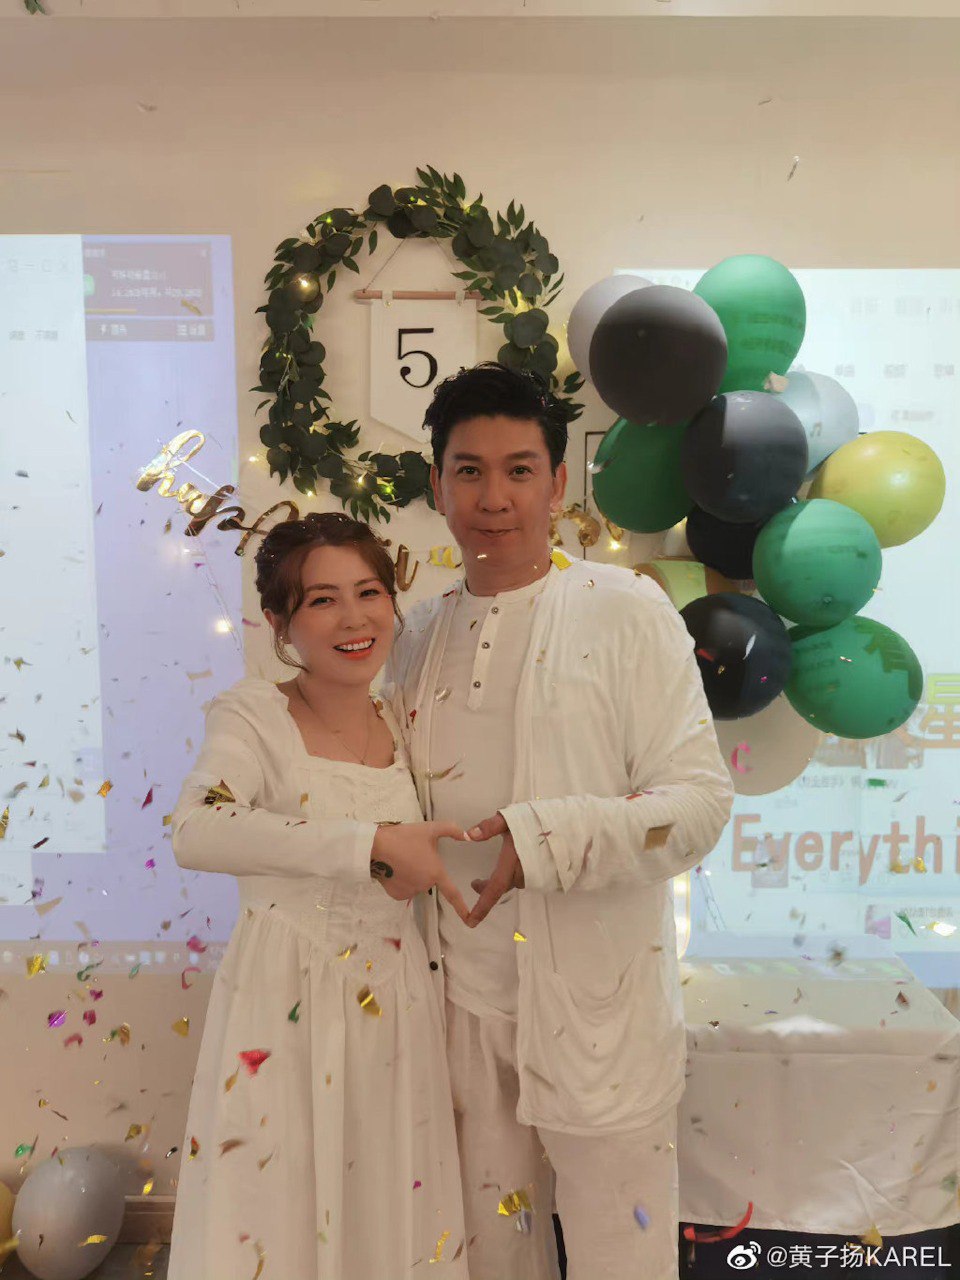 黄子扬在2017年与现任妻子结婚。